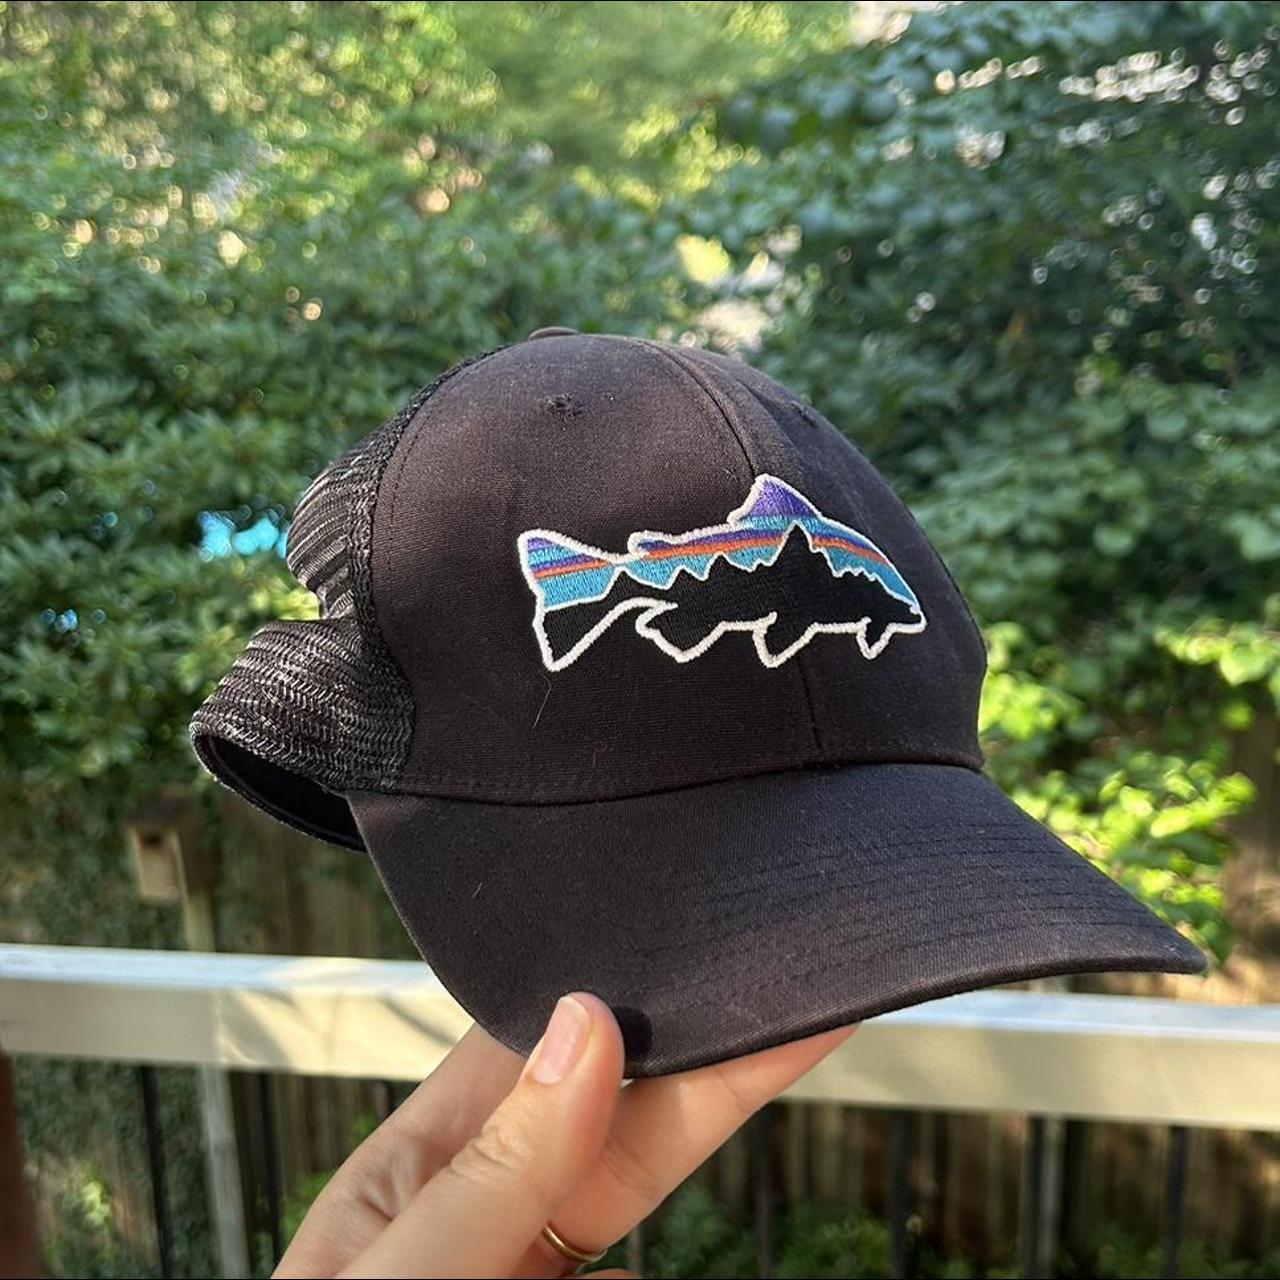 Patagonia hat with fish logo